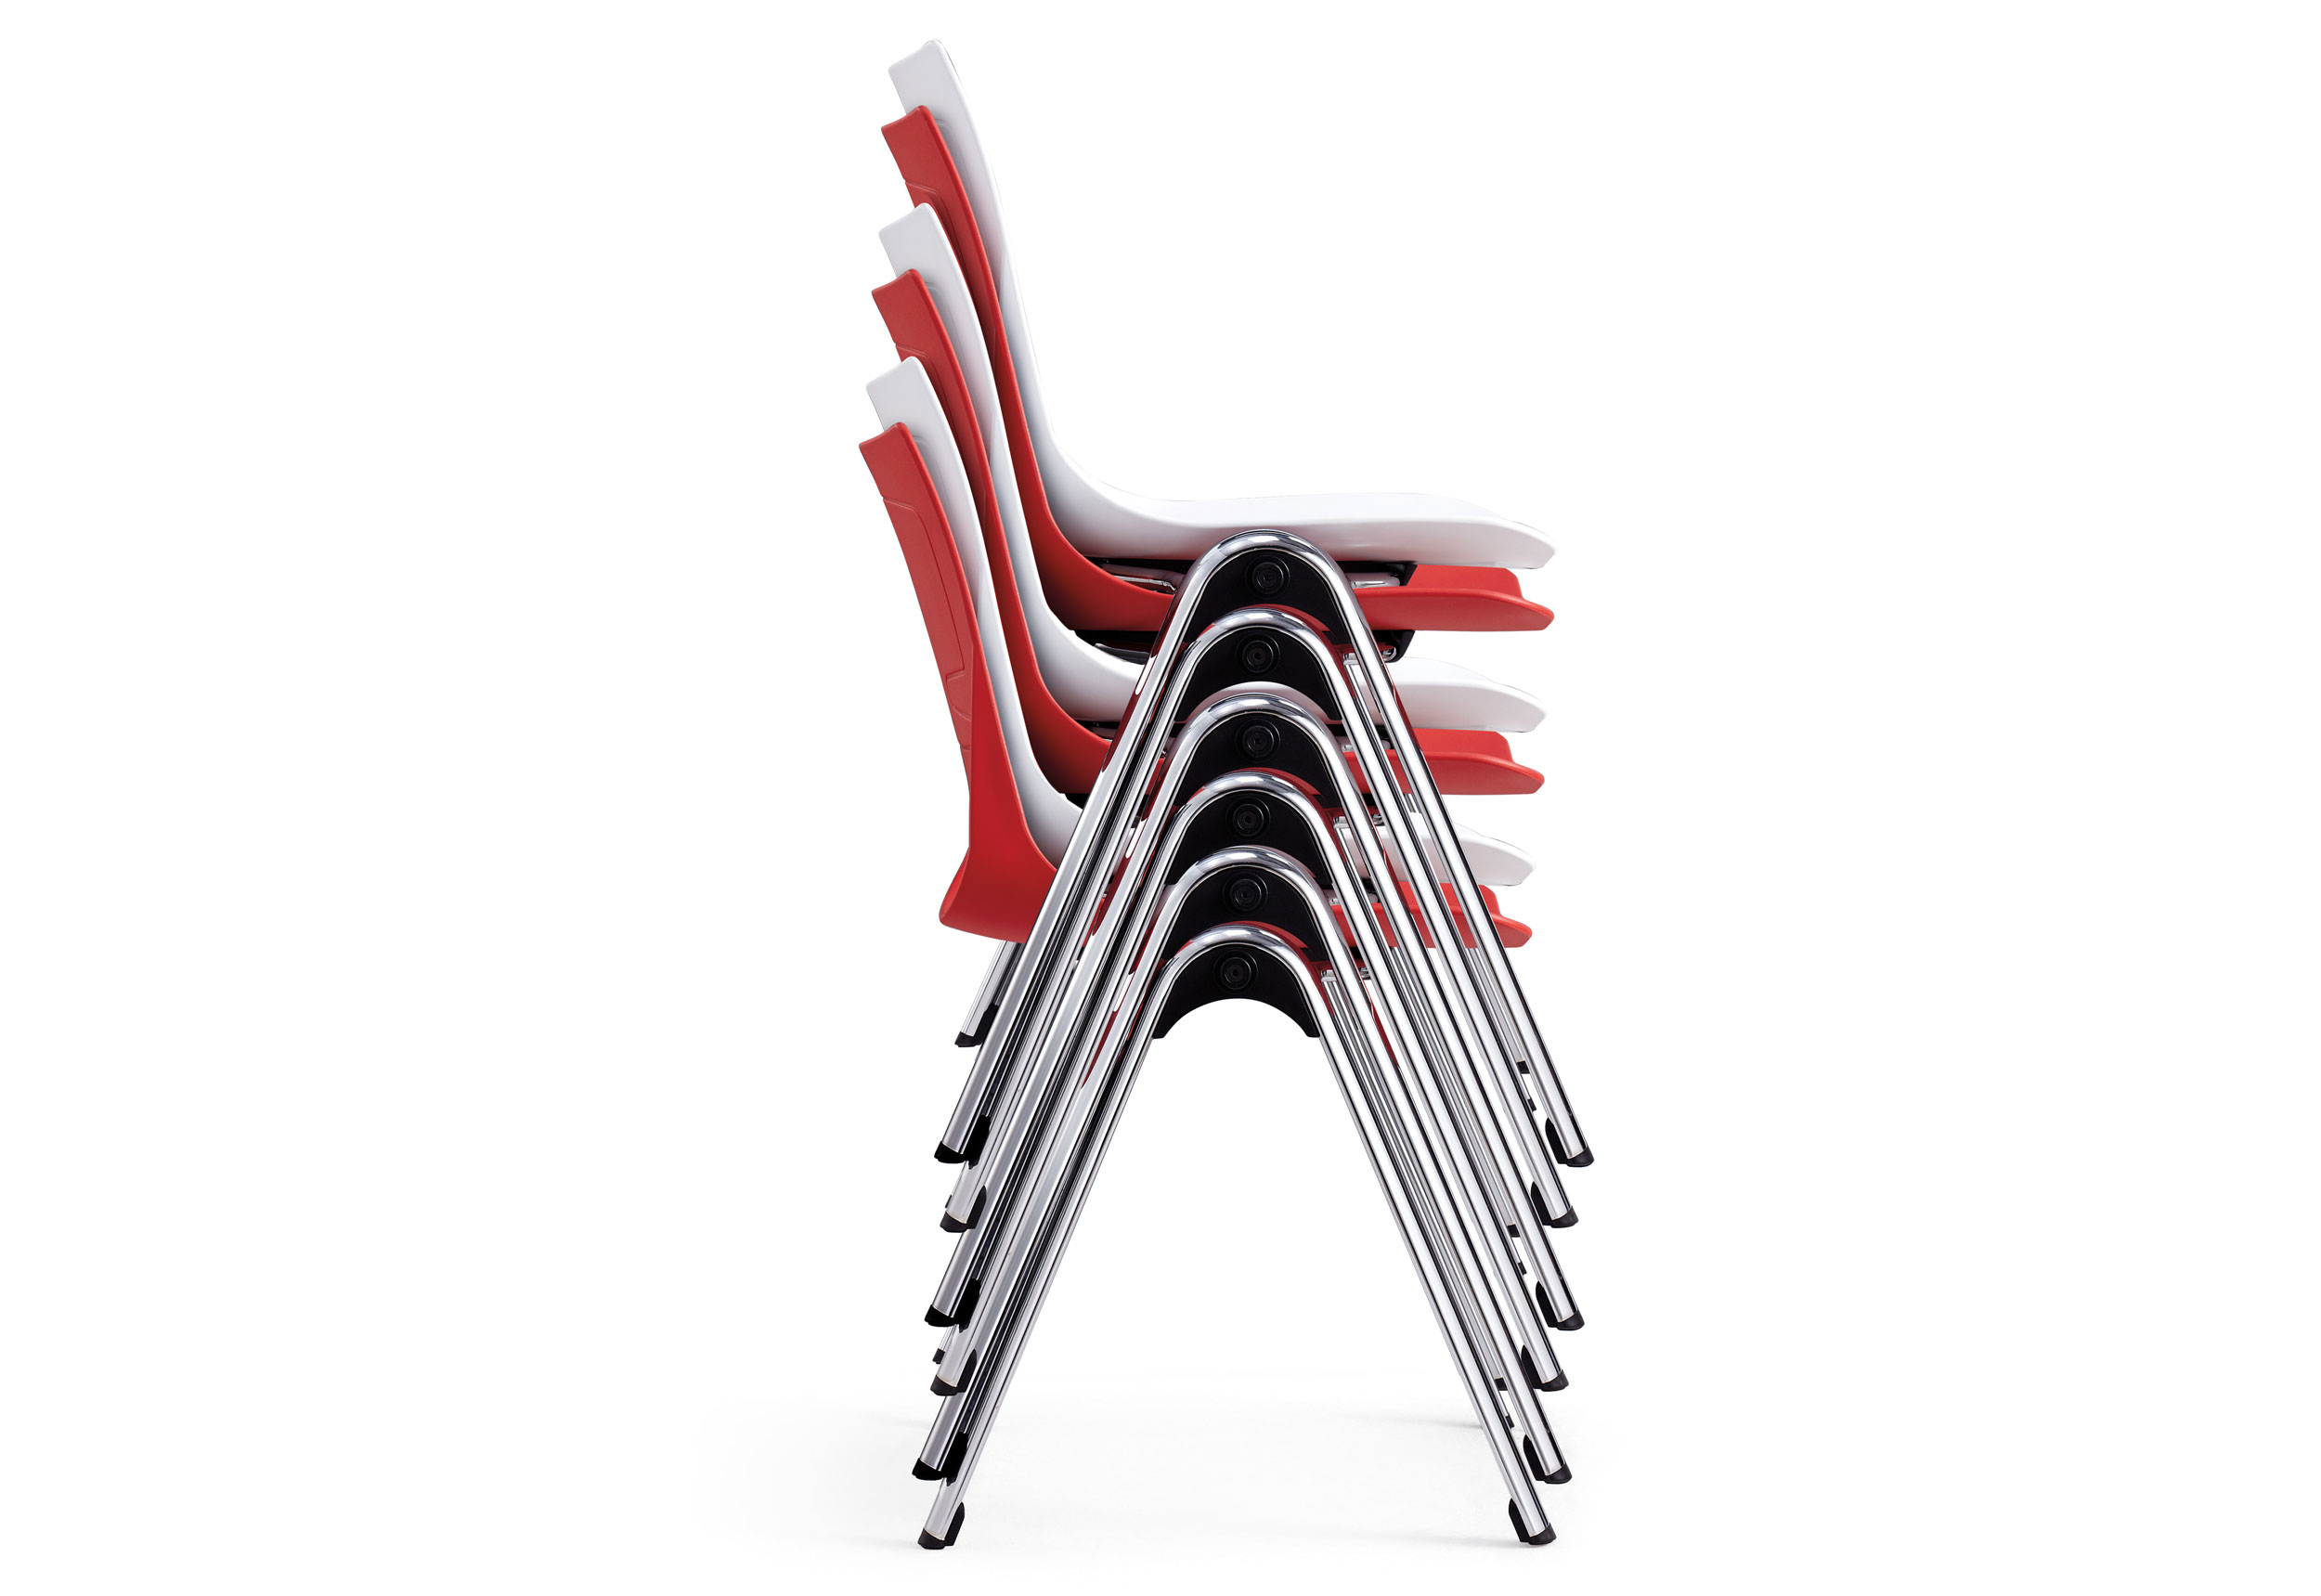 Optional Aluminum Plastic Chair (CA)